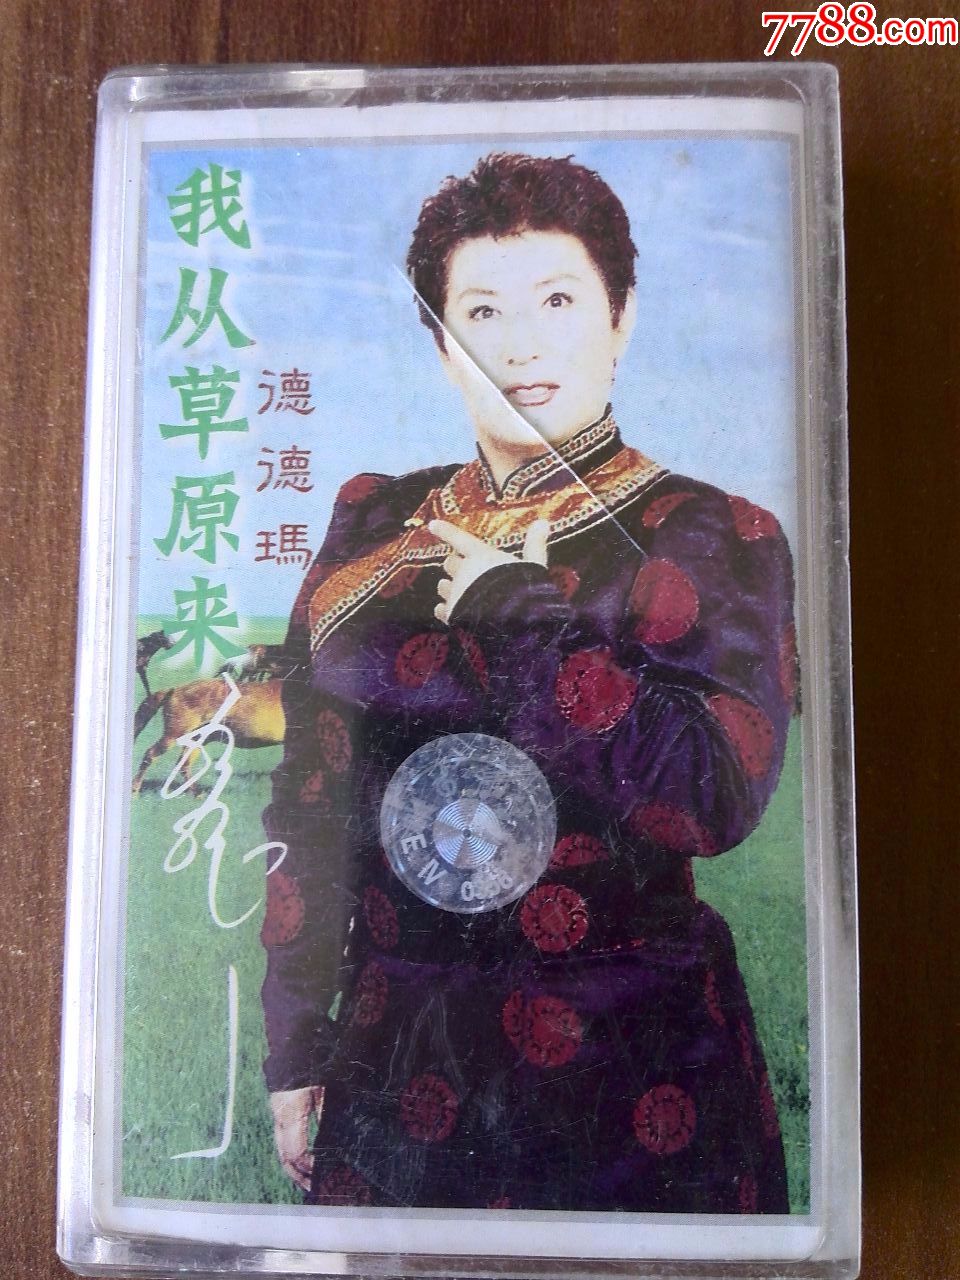 蒙古族歌唱家德德玛演唱专辑我从草原来广州音像出版社出版